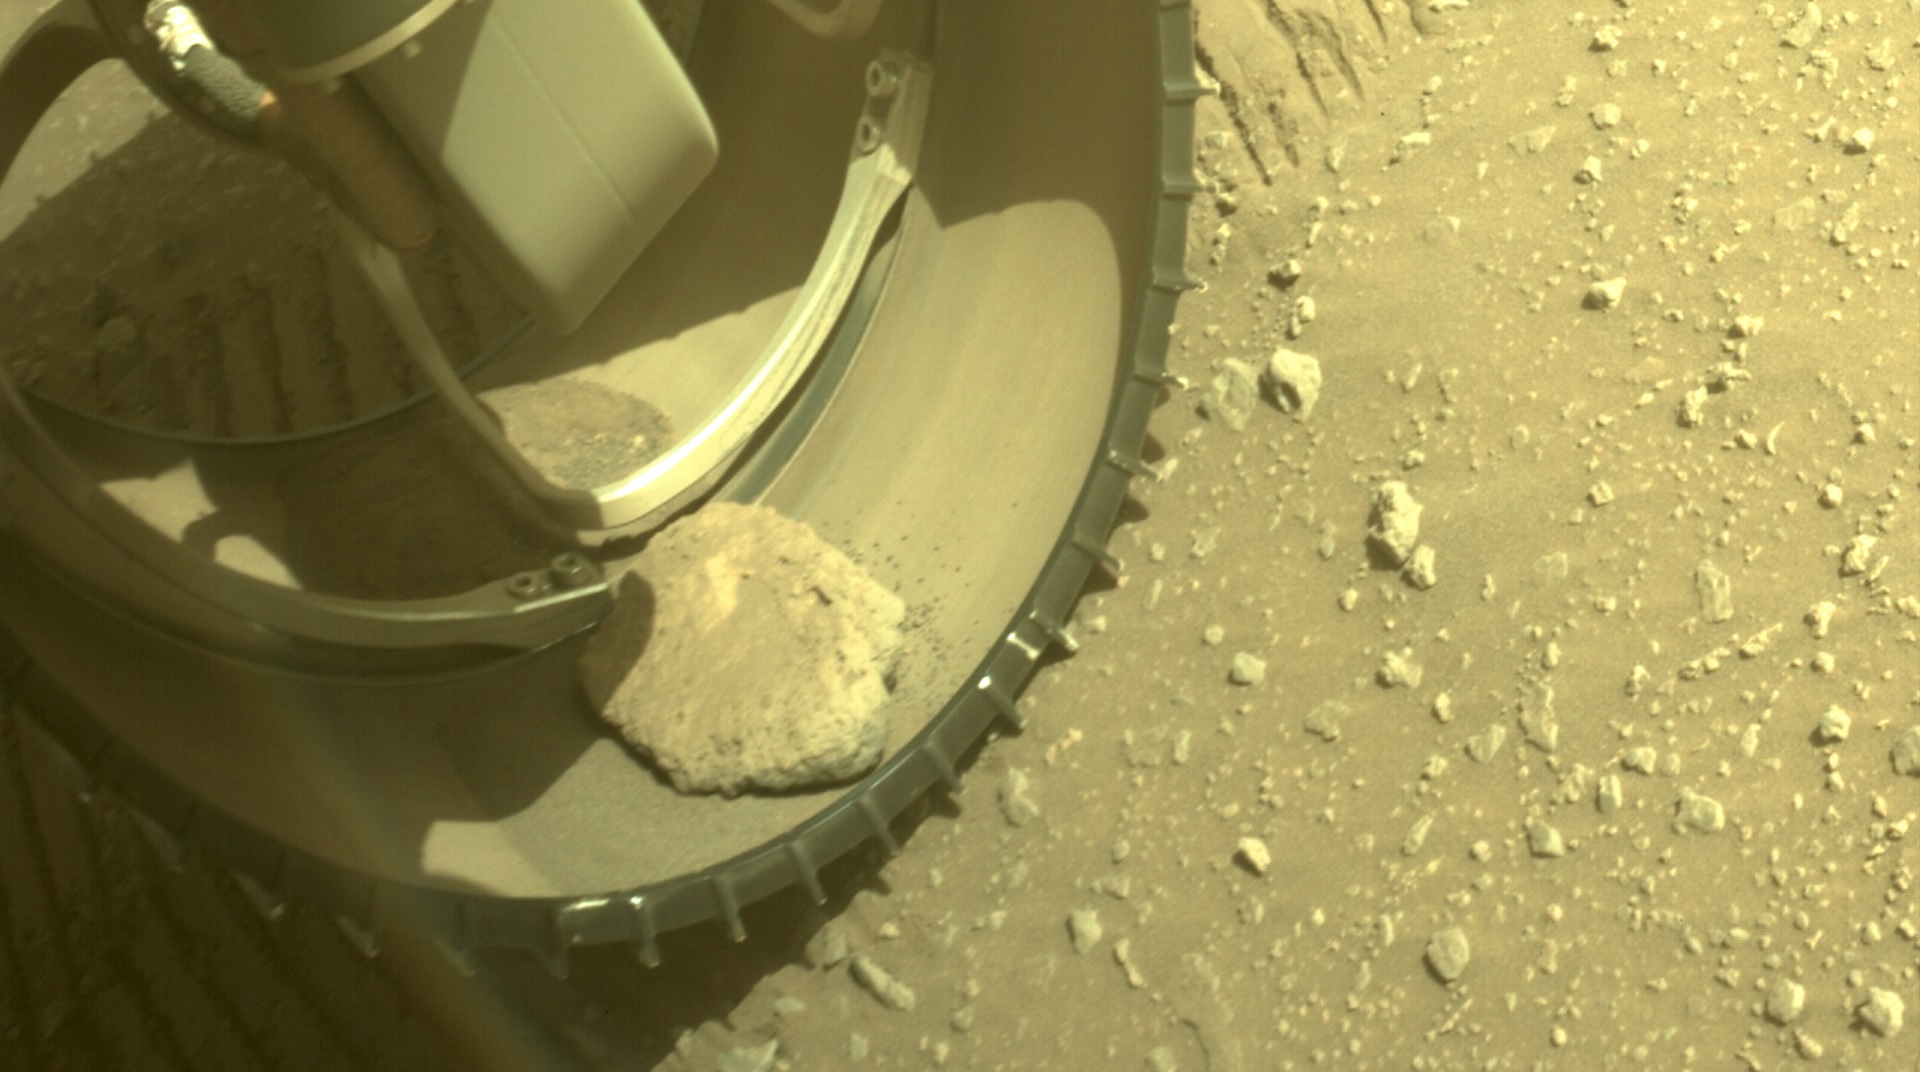 Le rover Perseverance a accidentellement embarqué un caillou dans sa roue : faut-il s'inquiéter ?